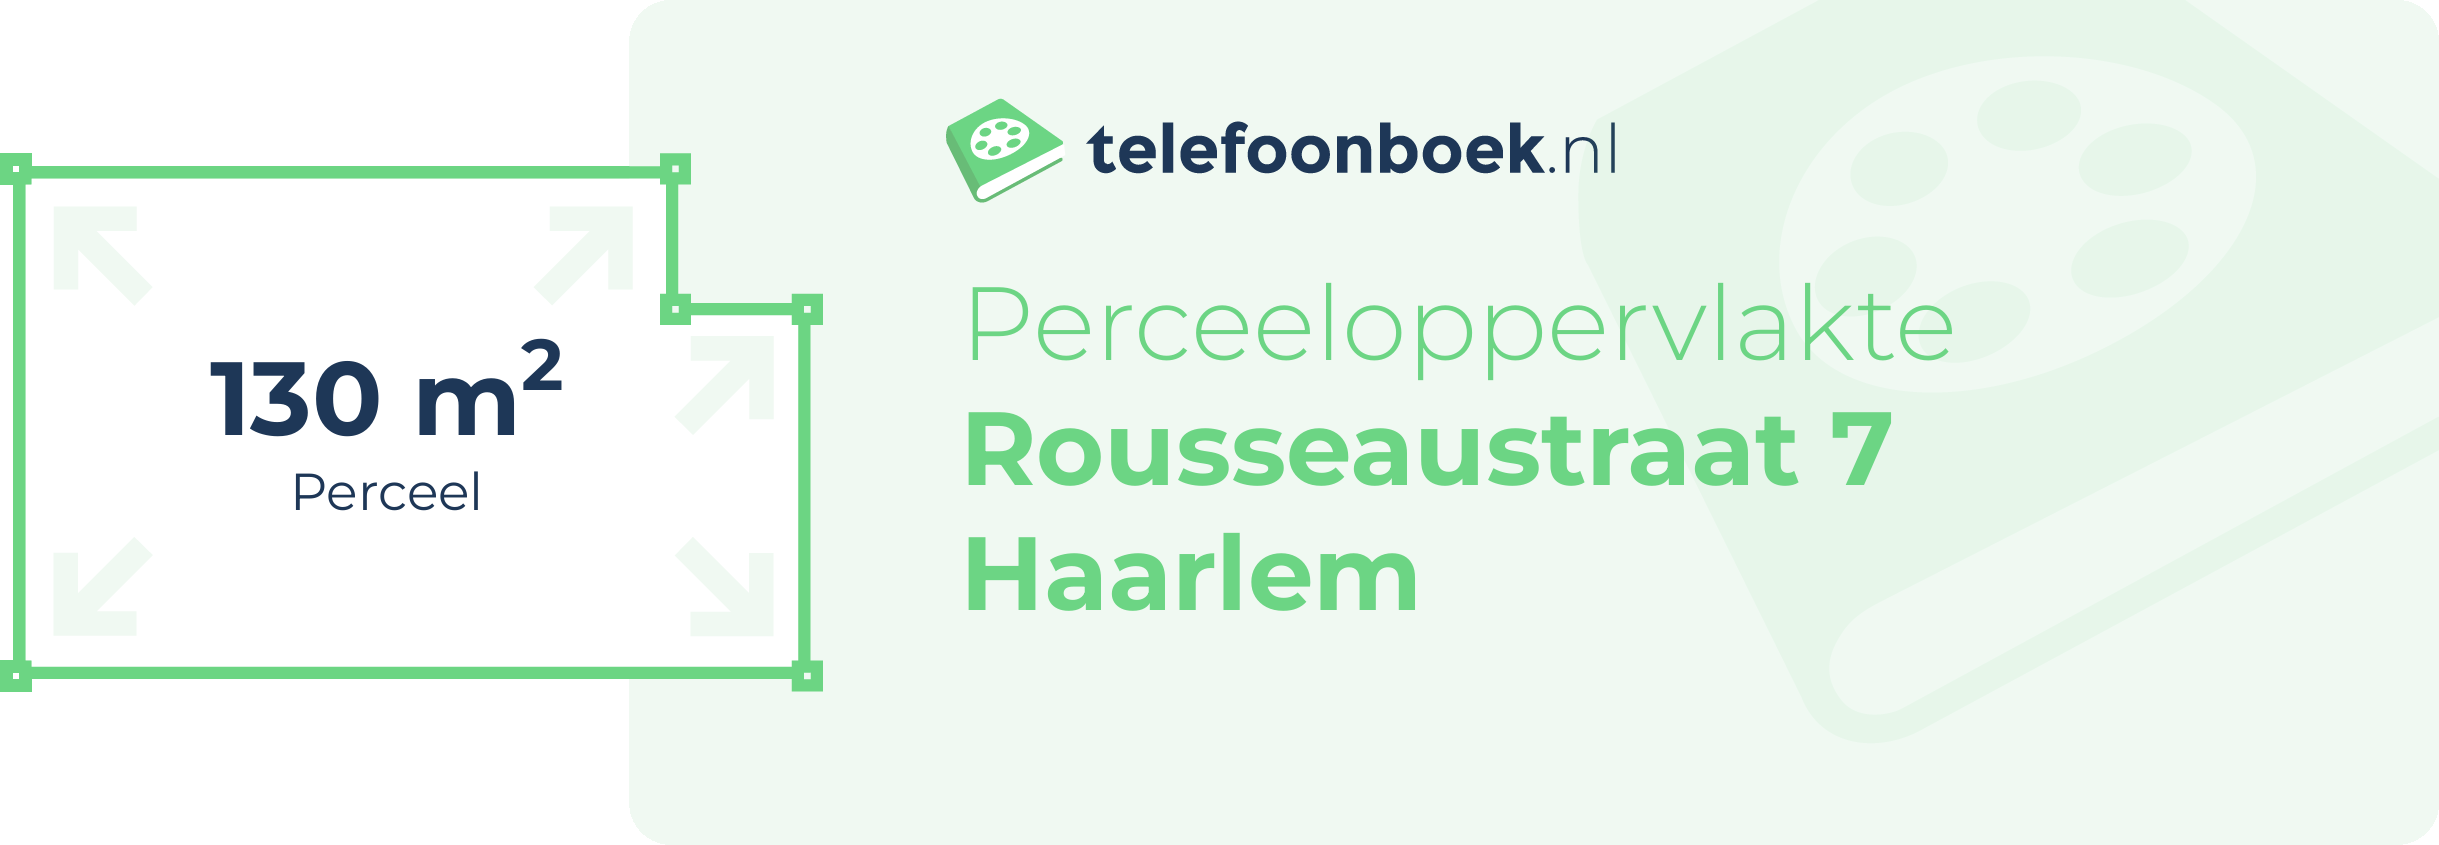 Perceeloppervlakte Rousseaustraat 7 Haarlem